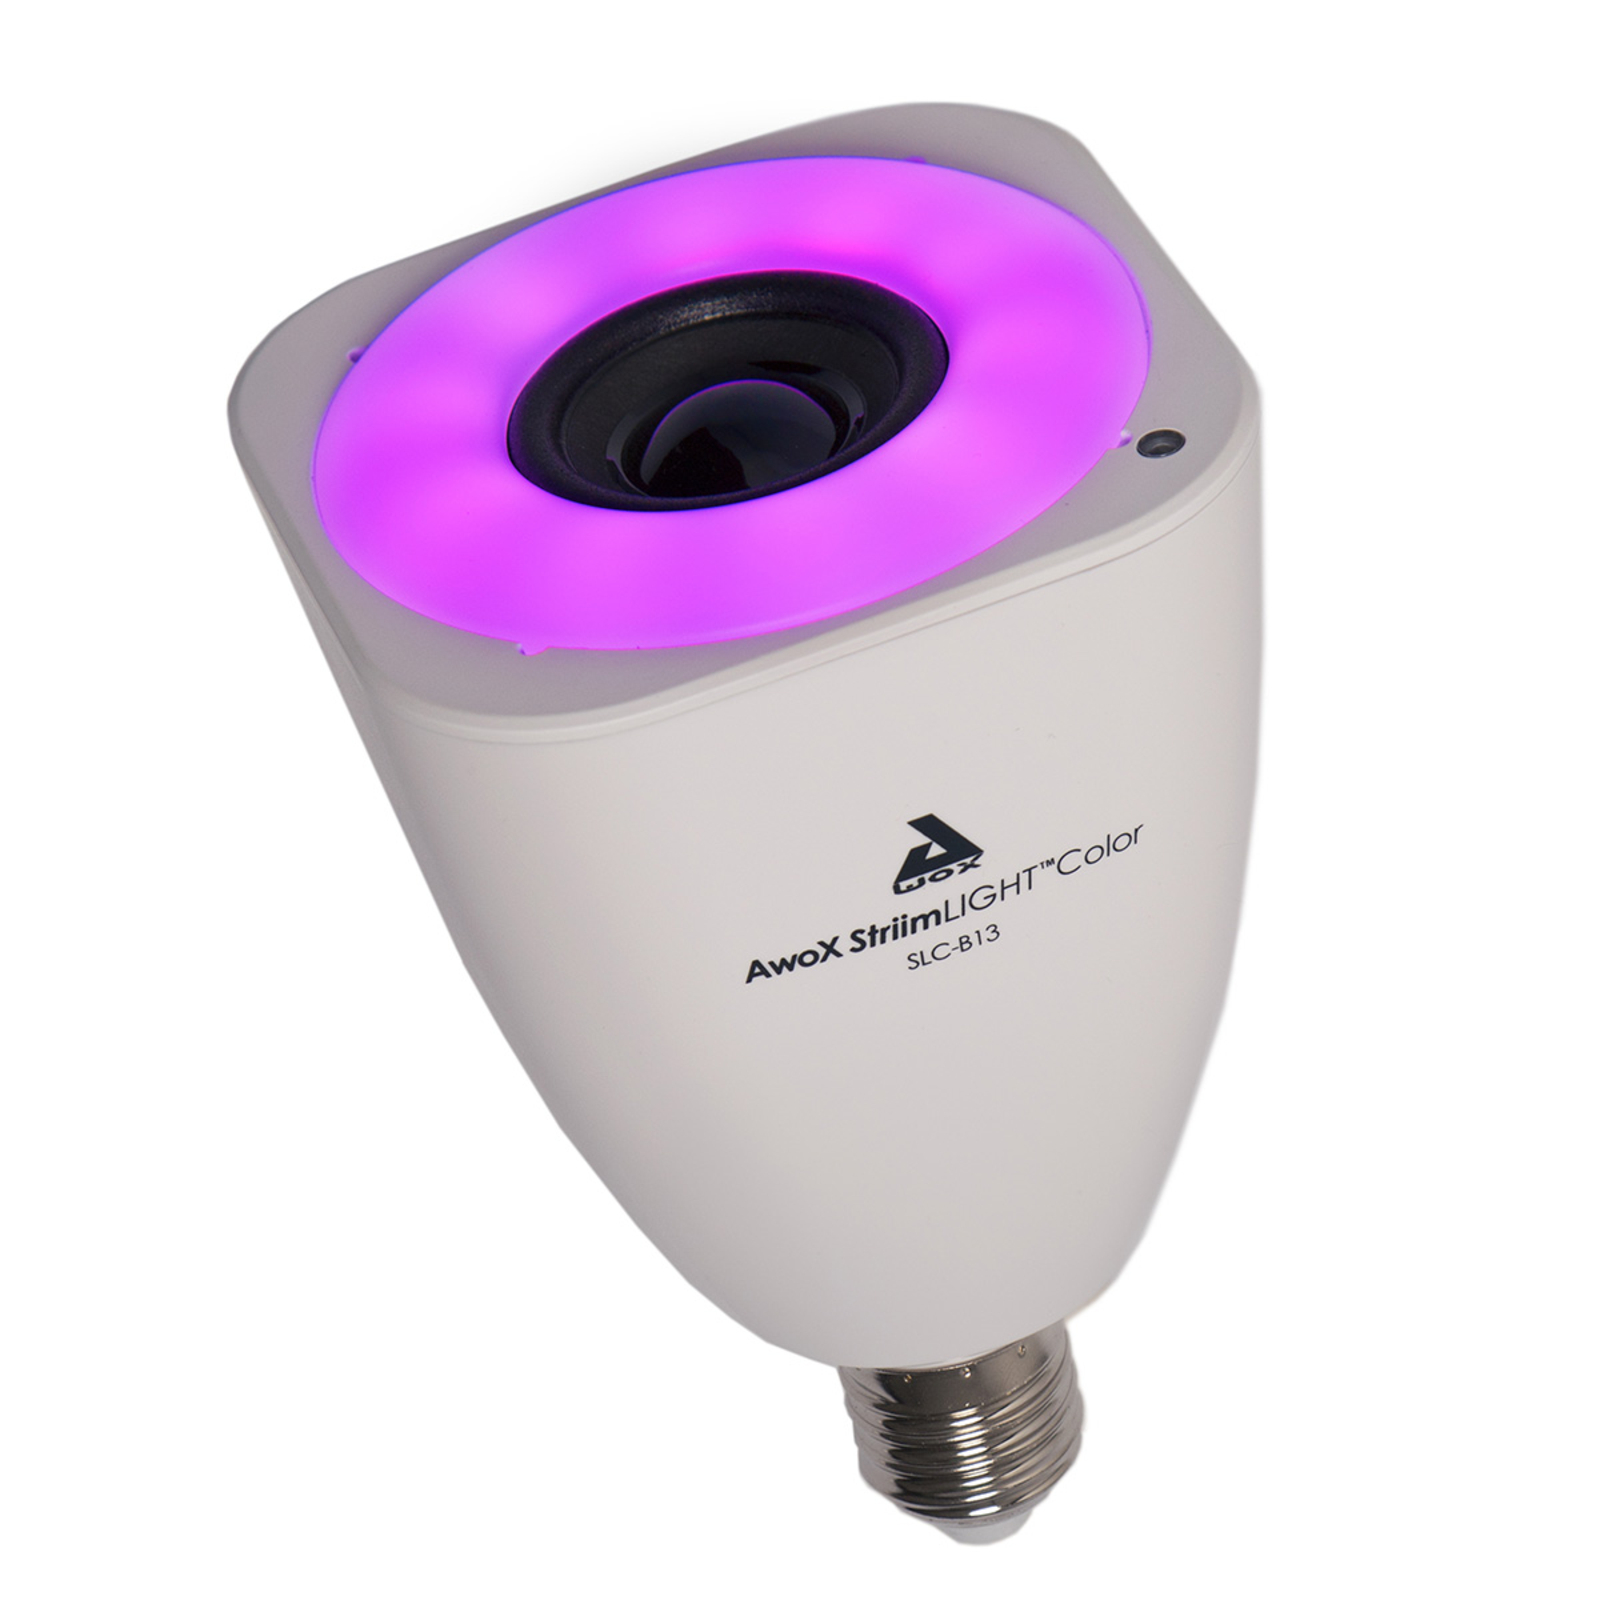 AwoX StriimLIGHT Color LED lampadina E27 Bluetooth